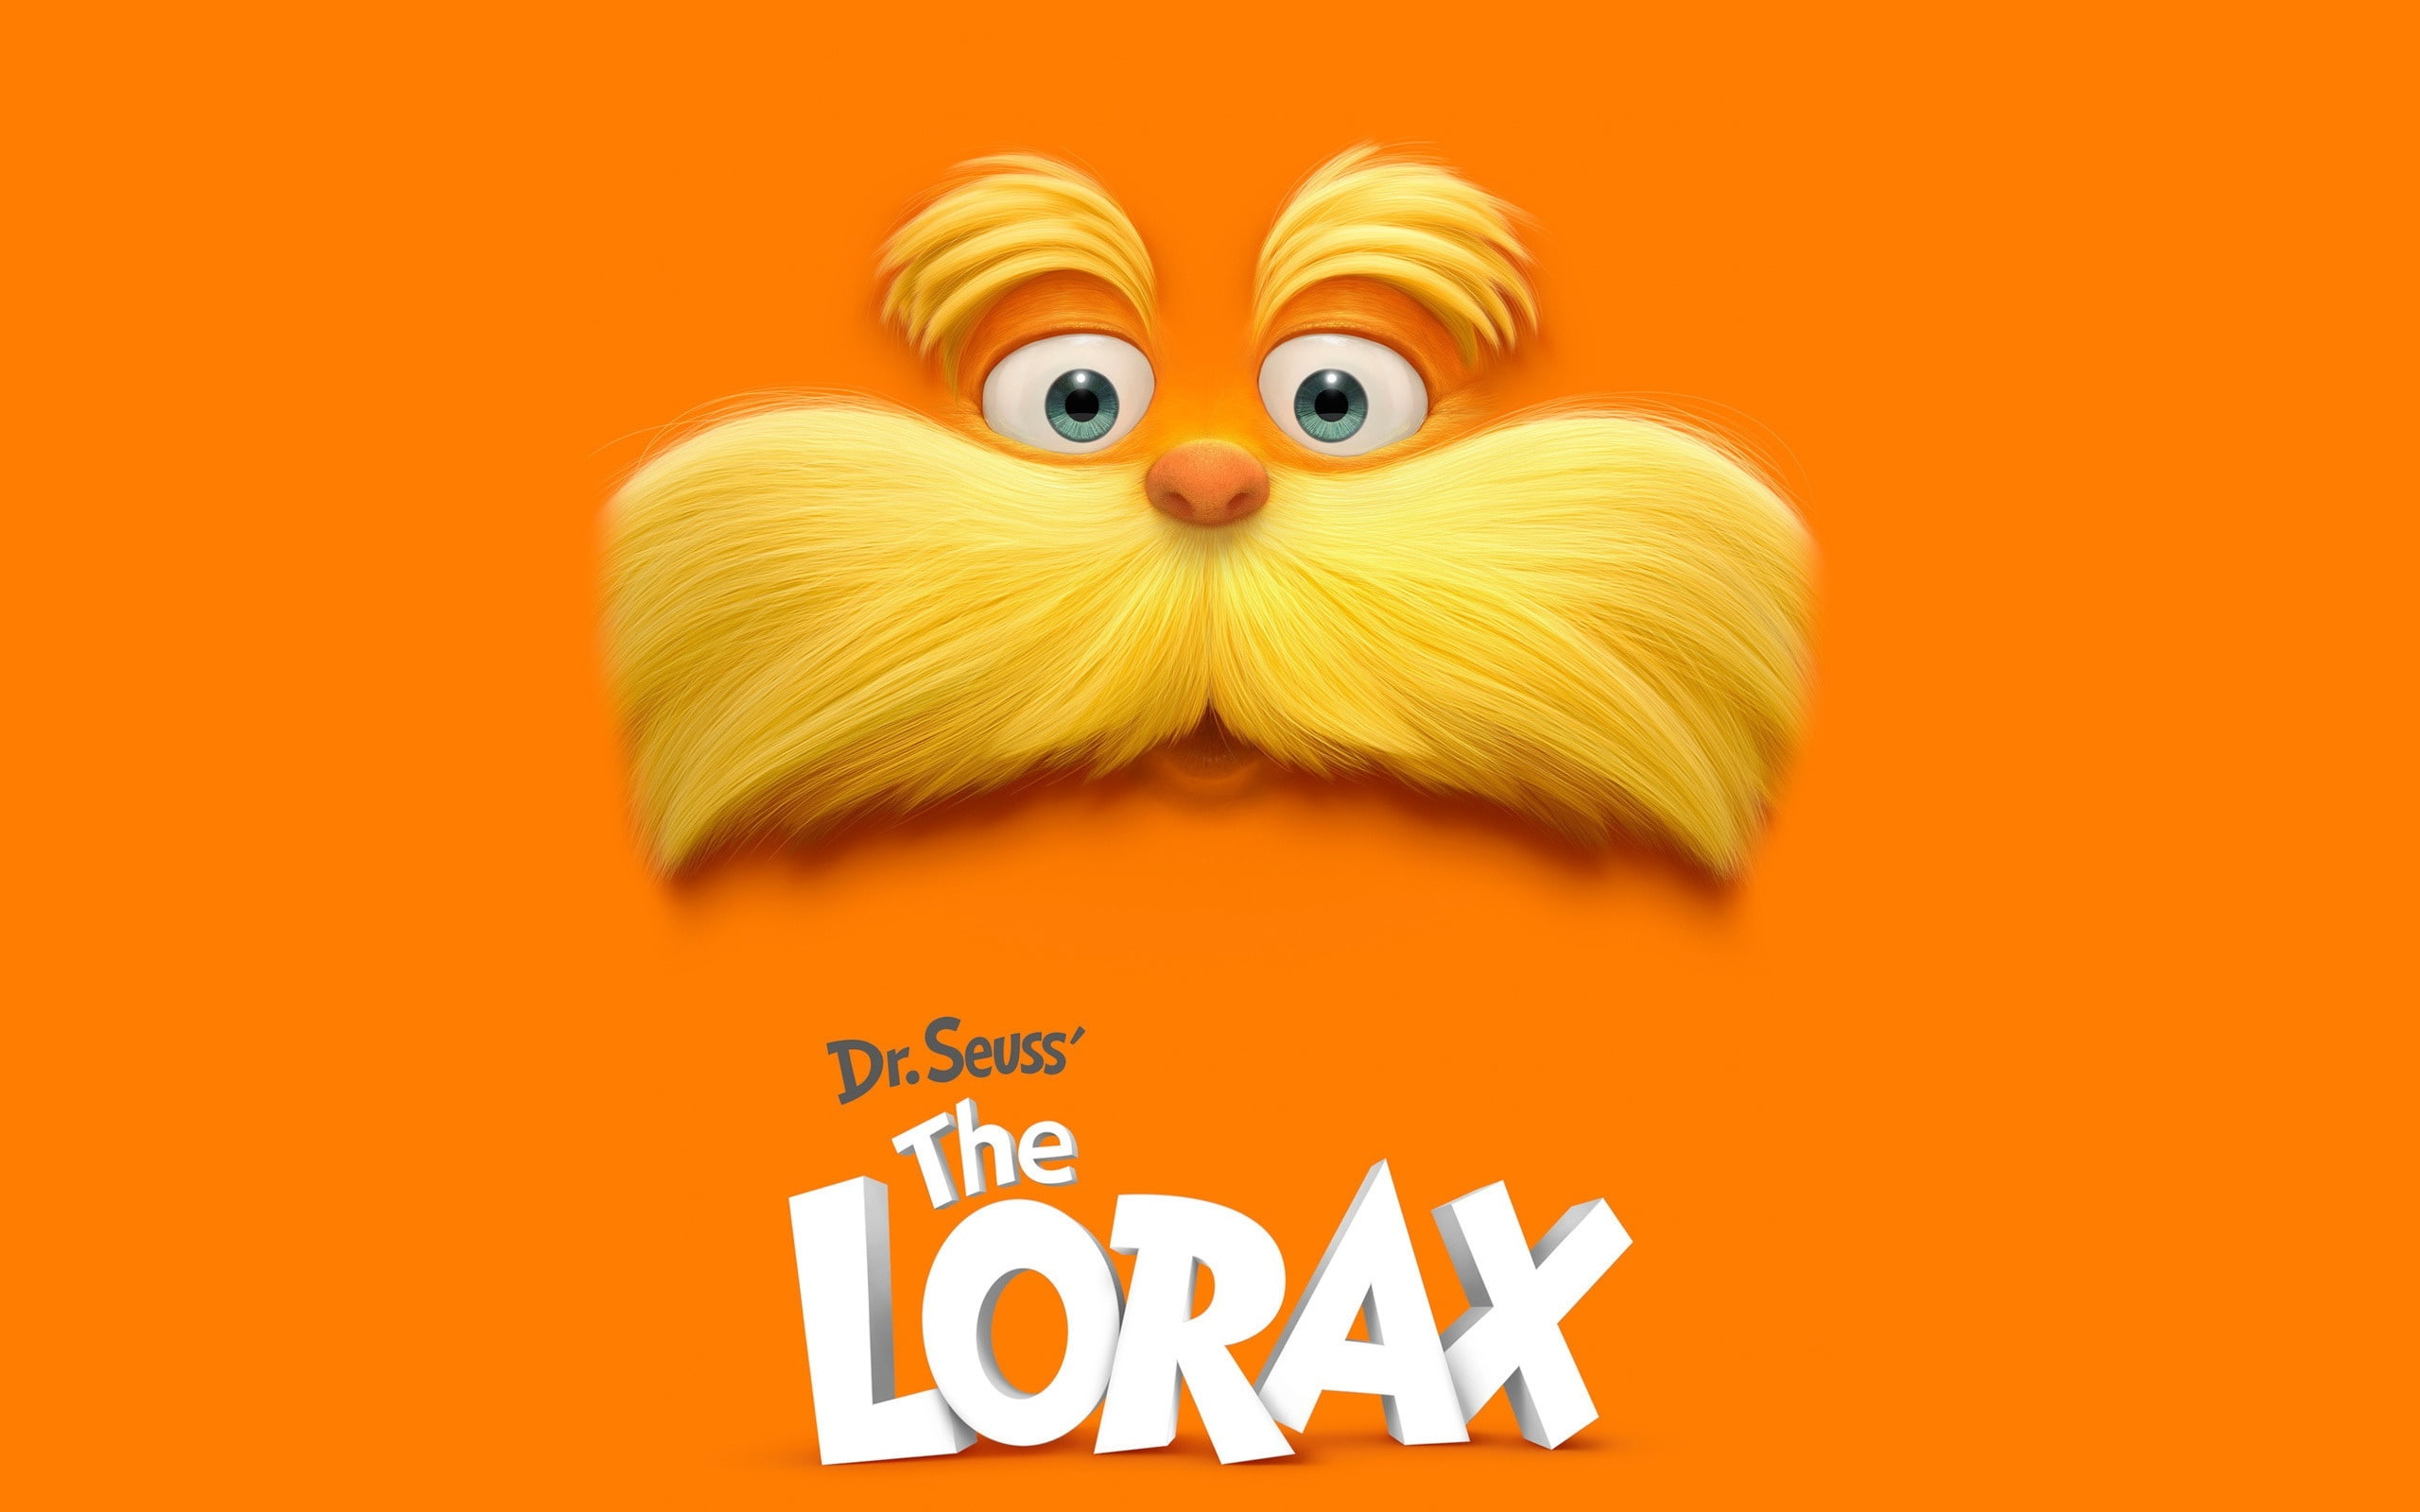 Dr. Seuss The Lorax digital wallpaper, mustache, cartoon, text